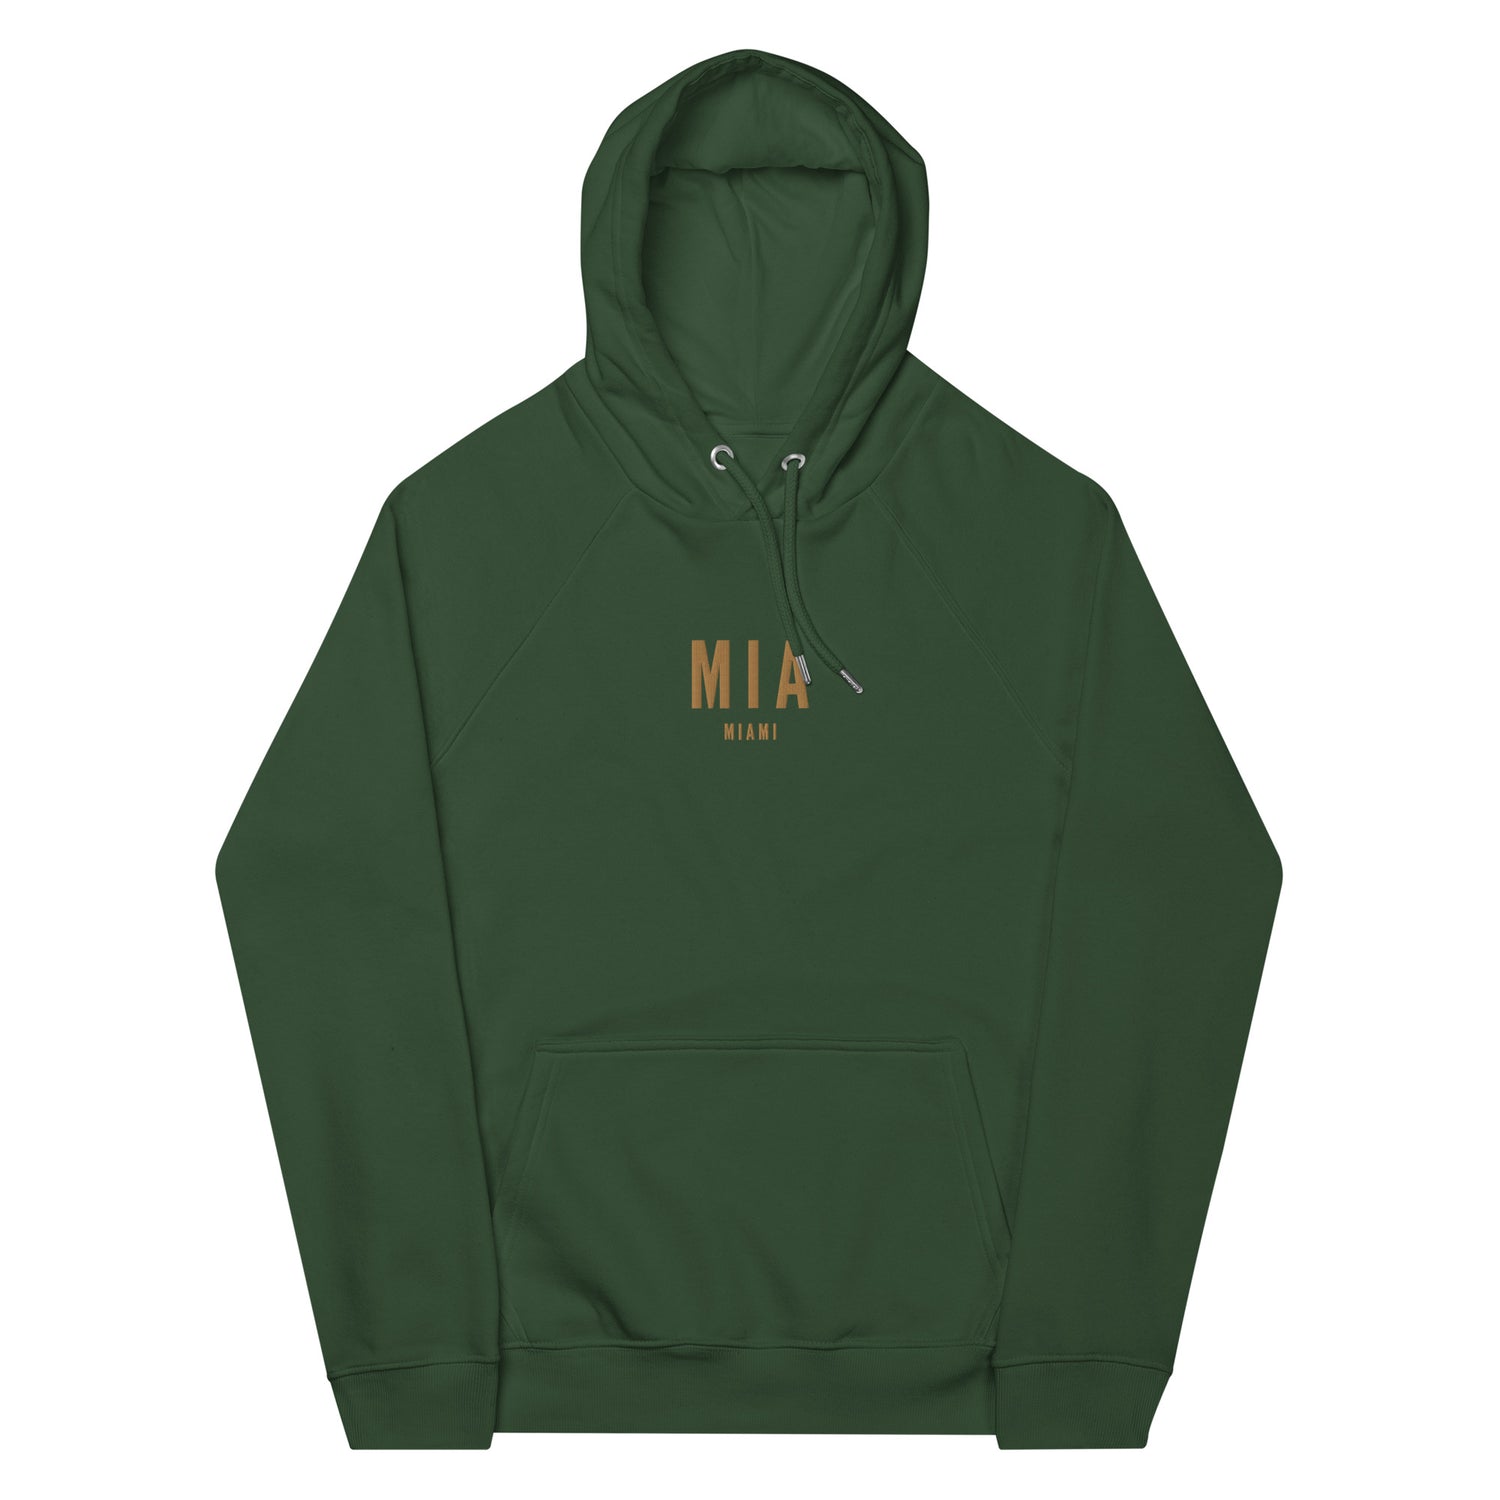 Miami Florida Hoodies and Sweatshirts • MIA Airport Code